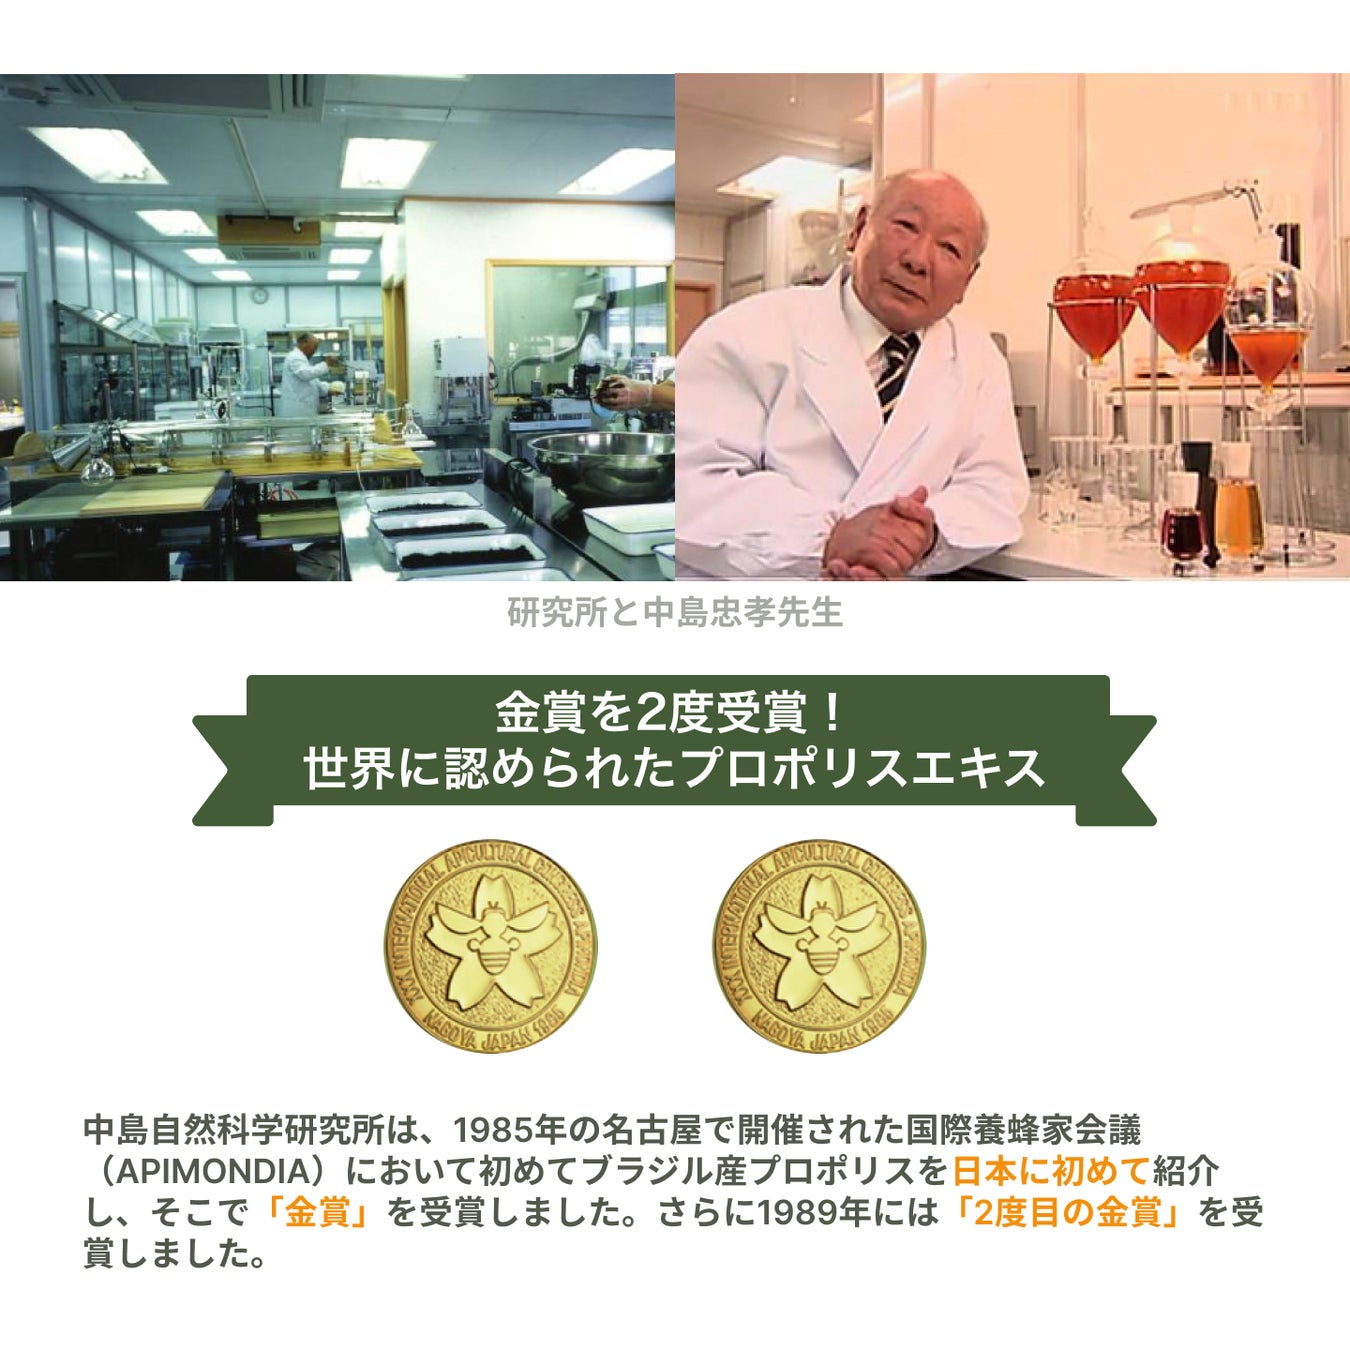 中島忠孝先生の天然30年熟成グリーンプロポリス専門店が銀座にオープン！